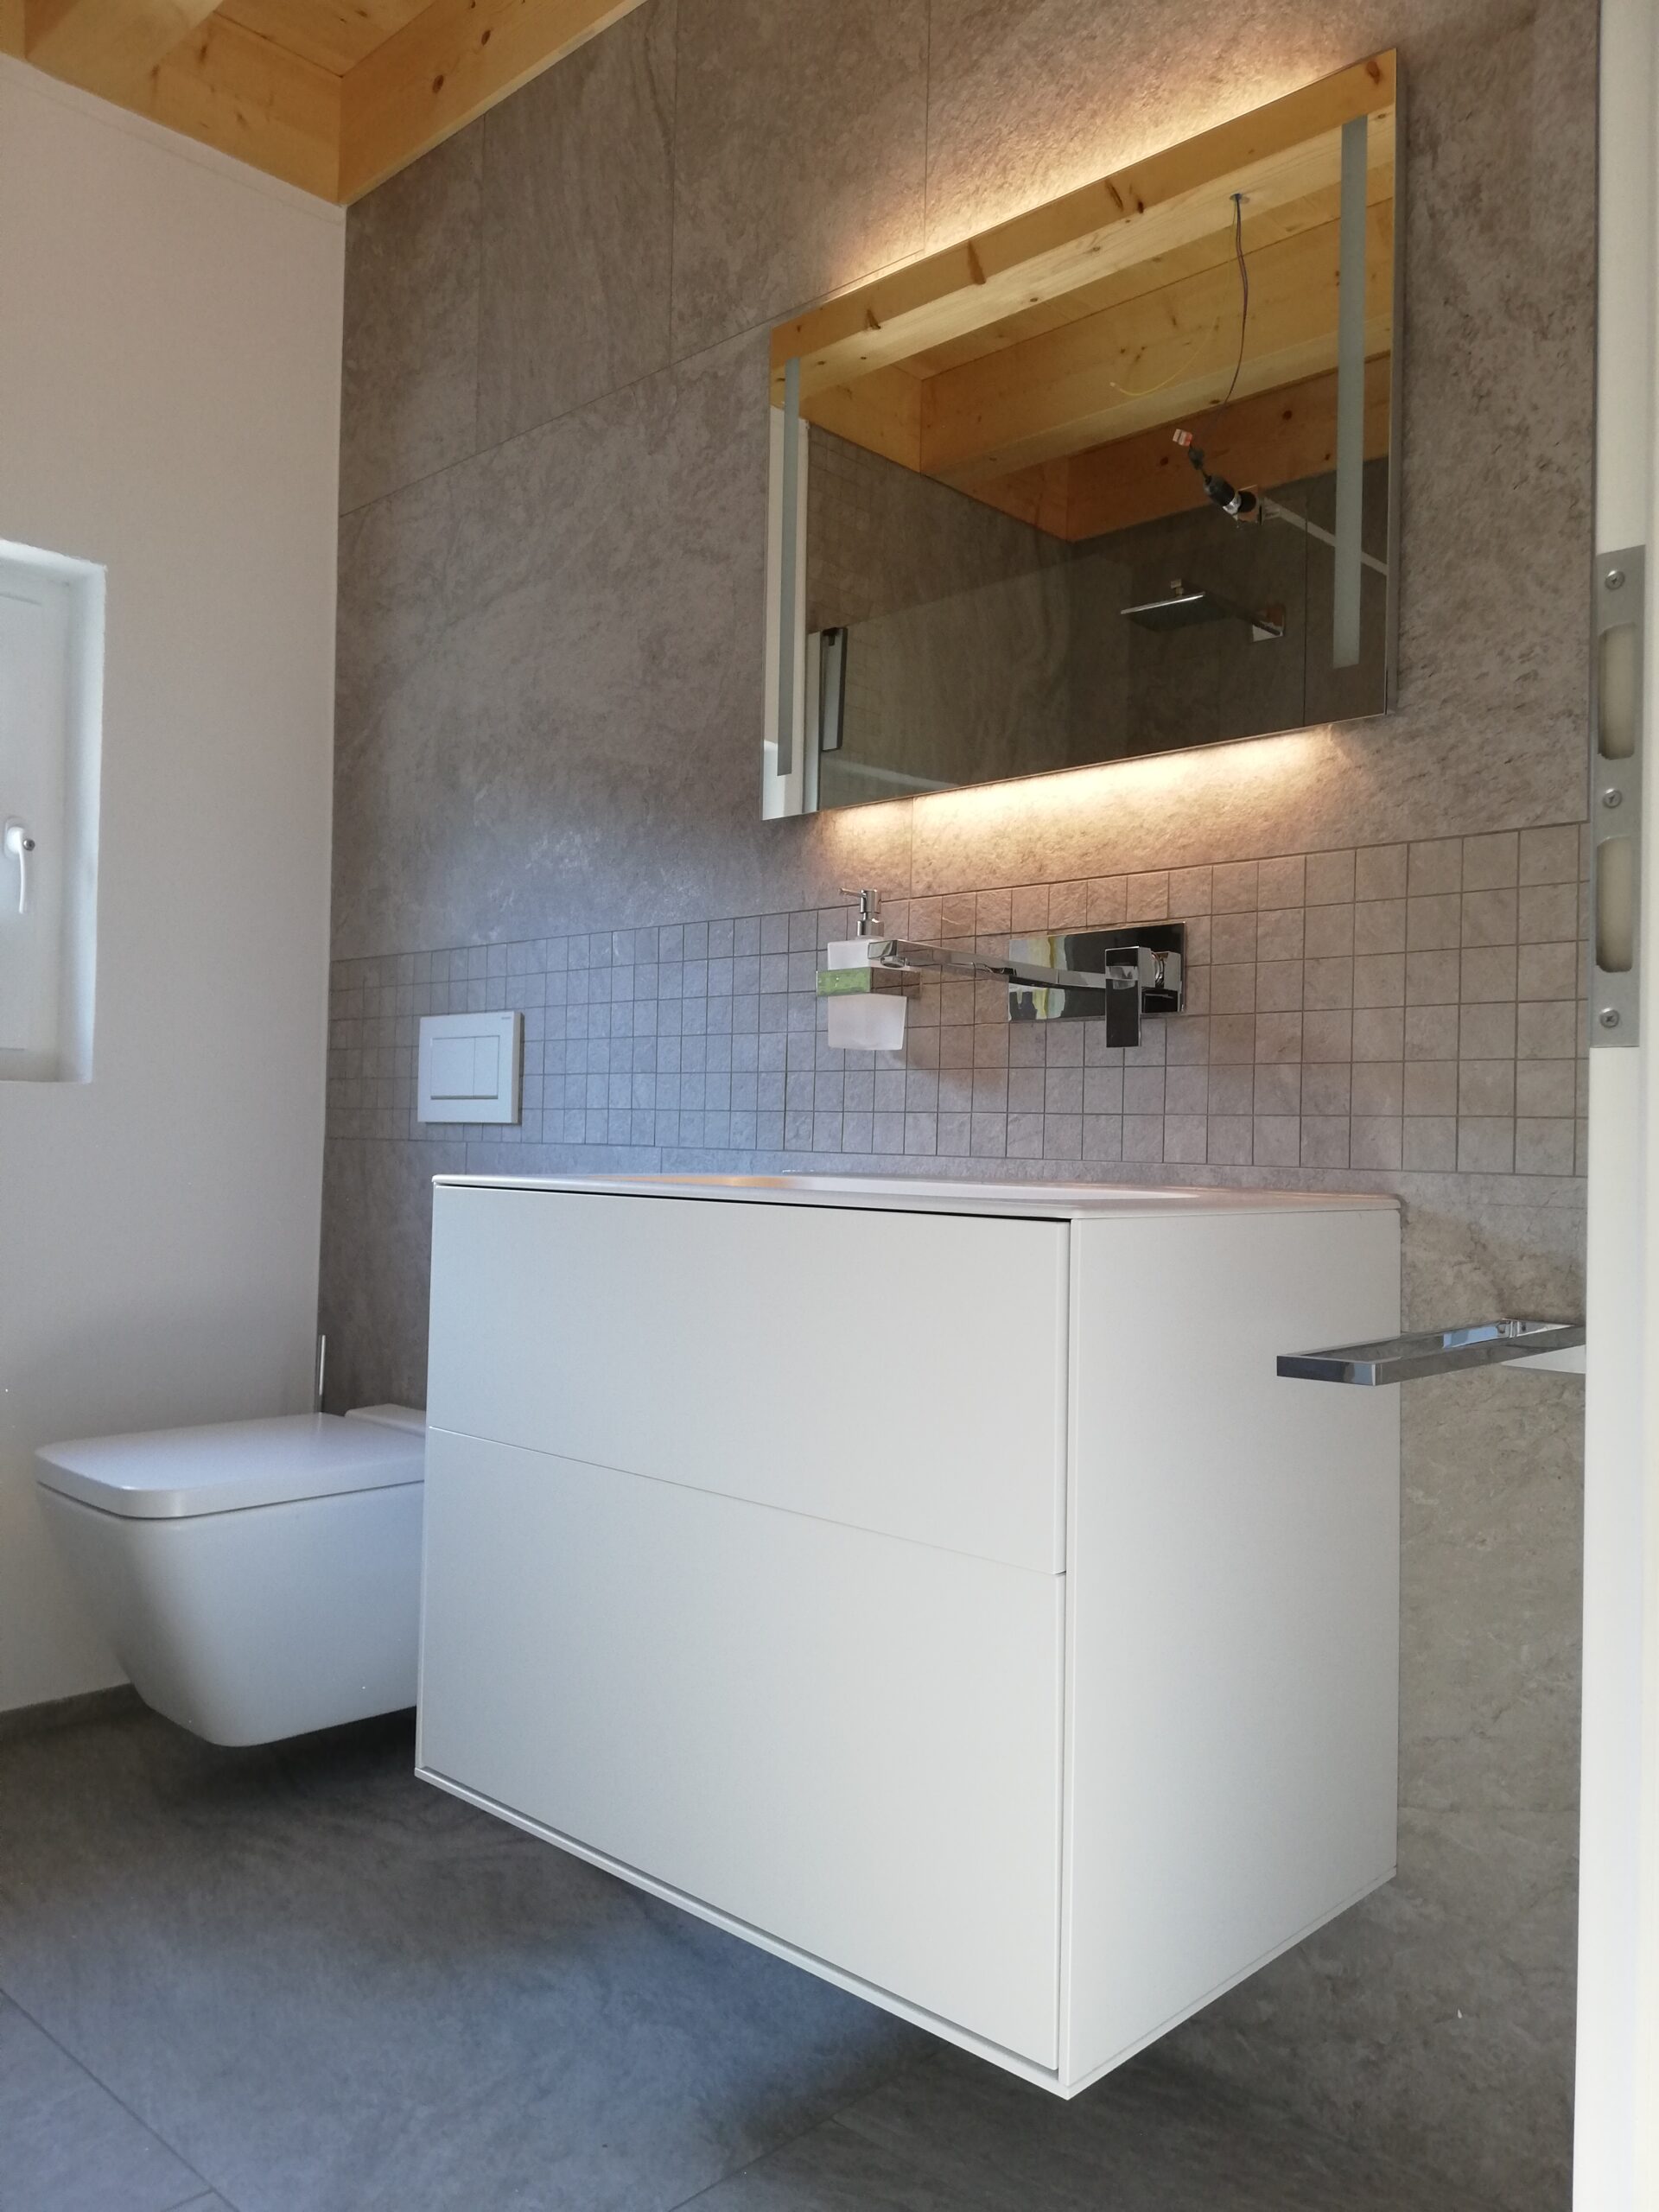 Bild von WC in Neubau EFH, Fliesen 5x5 cm, Mosaik, 45x90 cm, 150x75 cm, Stone-Optik. Fliesenlegen von Wand- und Bodenfliesen aller Art und Format